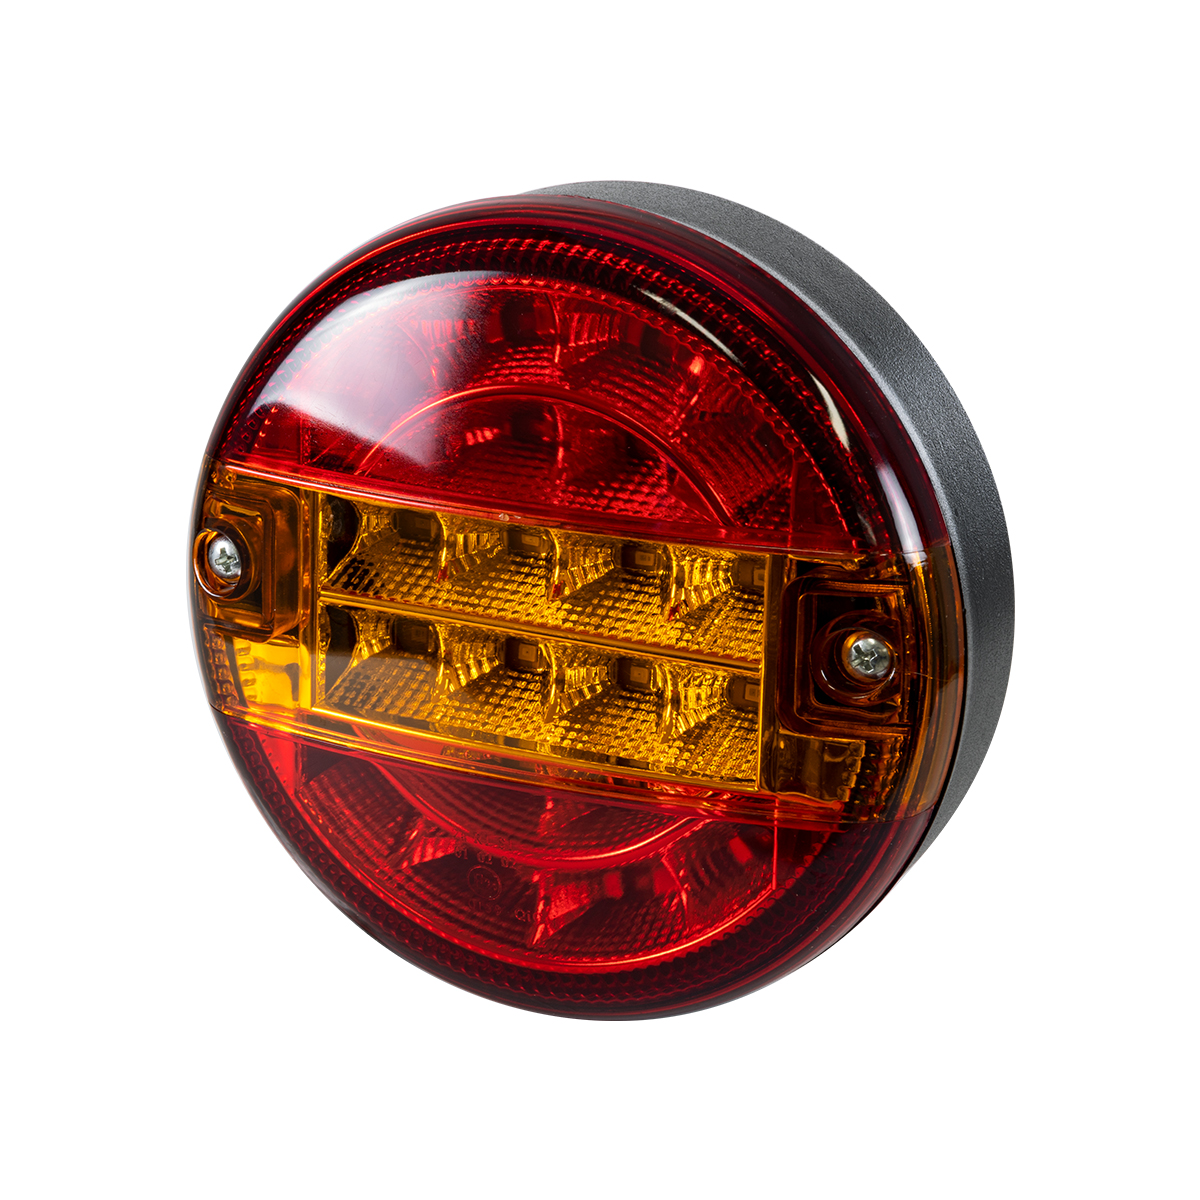 GloboStar® 79926 Φανάρι Universal για Τρέιλερ LED 10W – DC 12V – Κόκκινο – Πορτοκαλί – Αδιάβροχο IP66 – Φ13.5 x Υ5.5cm – 2 Χρόνια Εγγύηση